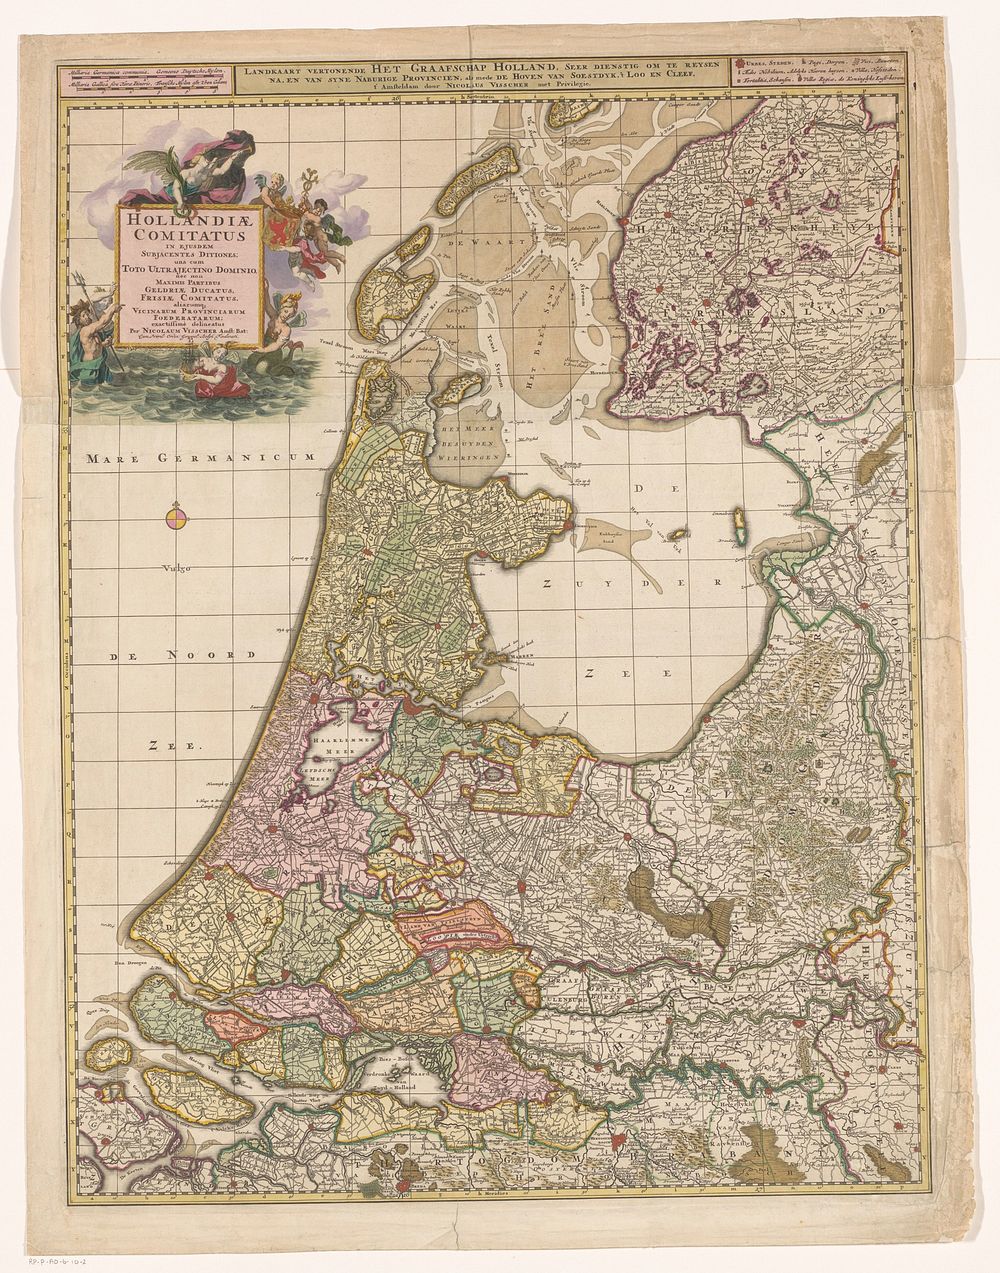 Kaart van het graafschap Holland (c. 1690) by Gilliam van der Gouwen, Nicolaes Visscher II and Staten Generaal